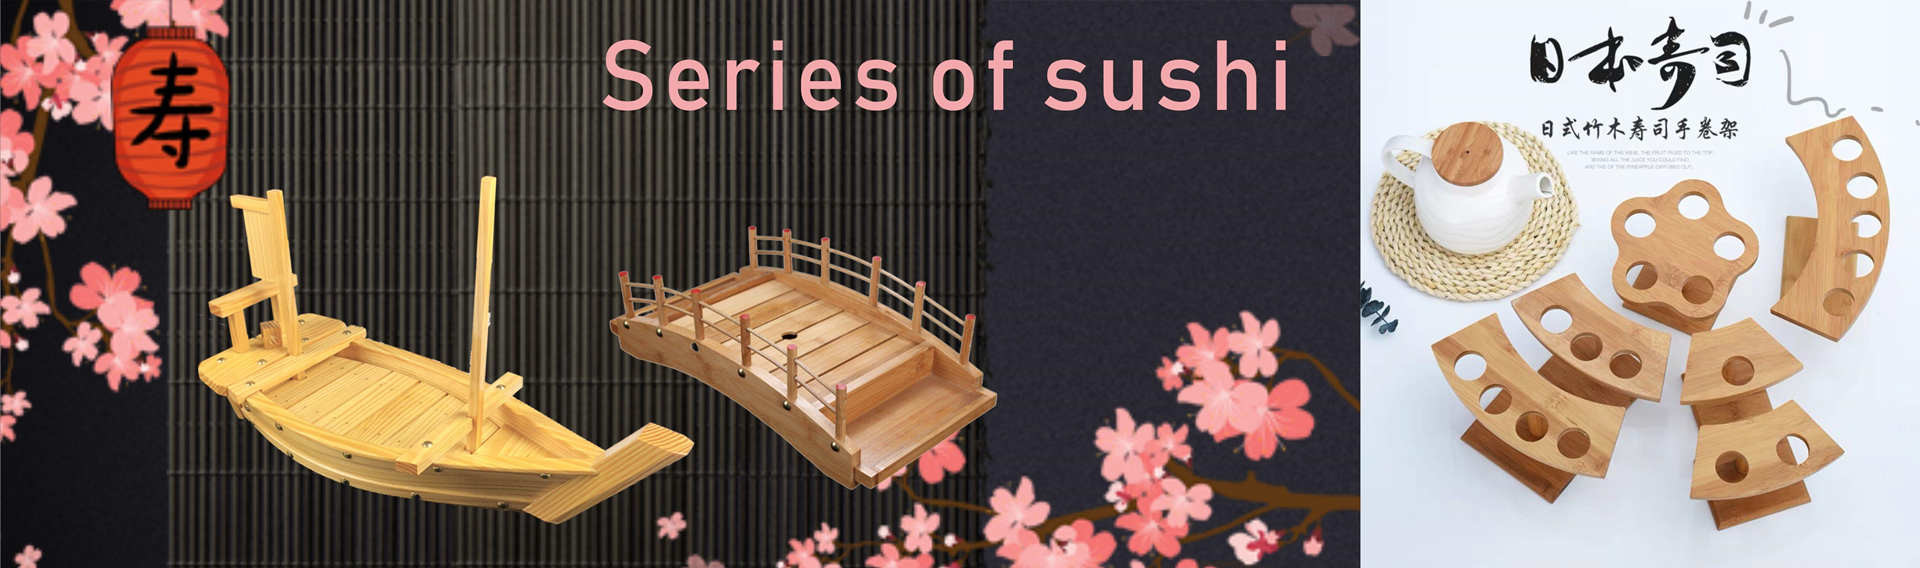 qualidade Bandeja do barco do sushi Serviço